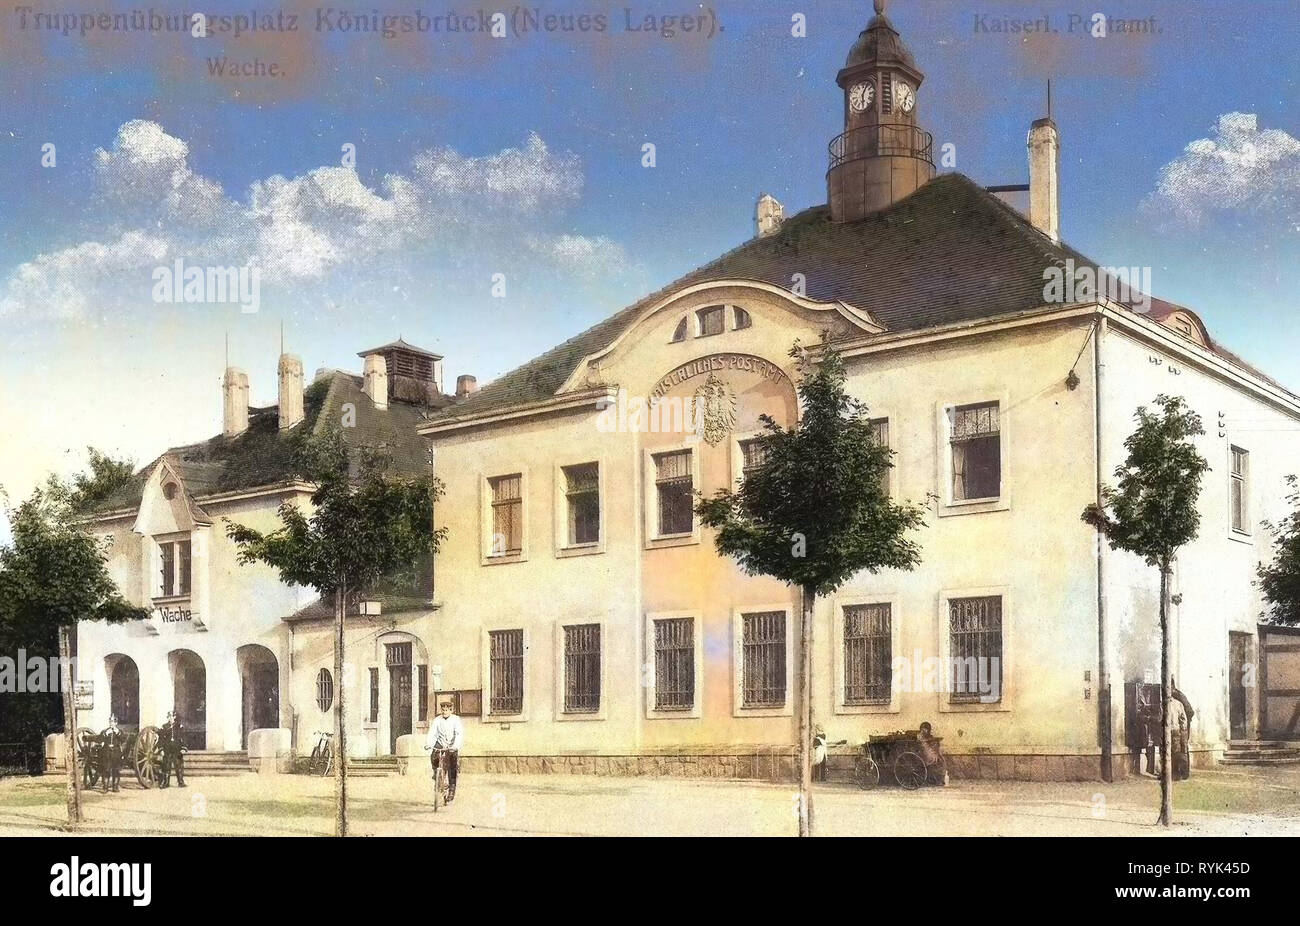 Wach-, Arrest- und Postgebäude (Neues Lager), Artillery of Germany, 1914, Landkreis Bautzen, Königsbrück, Neues Lager, Wache, Kaiserliches Postamt Stock Photo